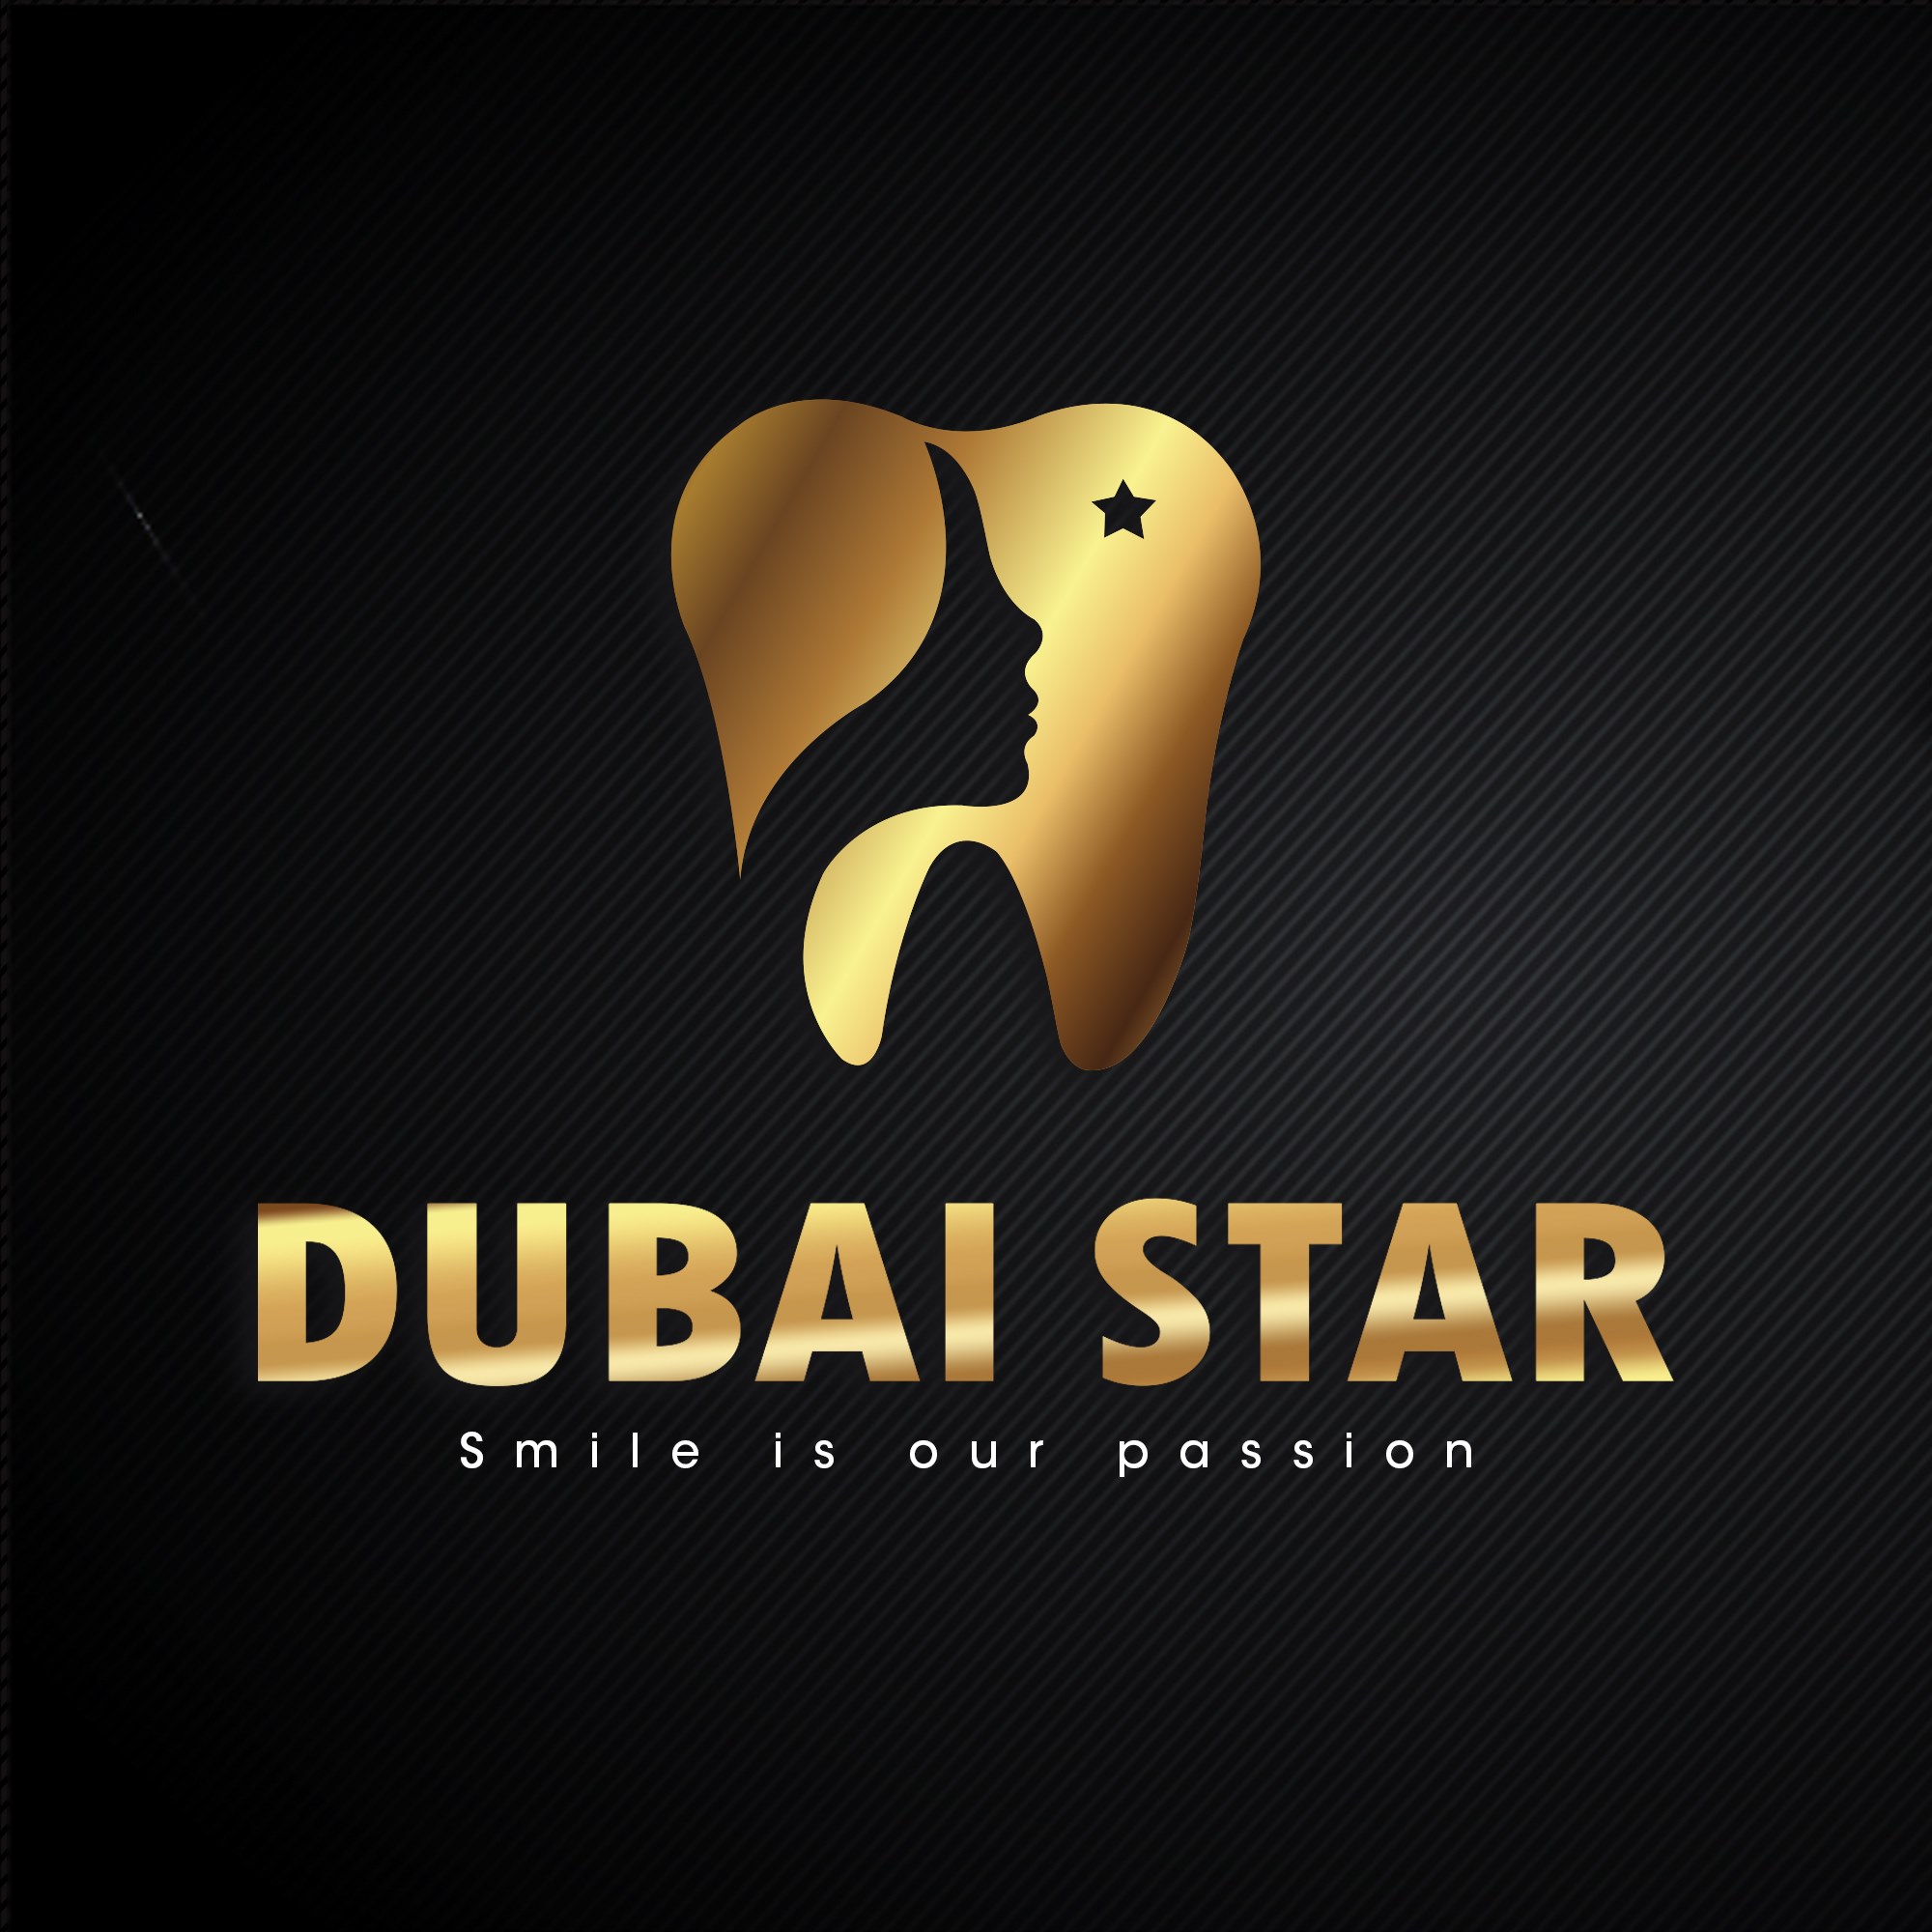 Dubai Star Poly Clinic